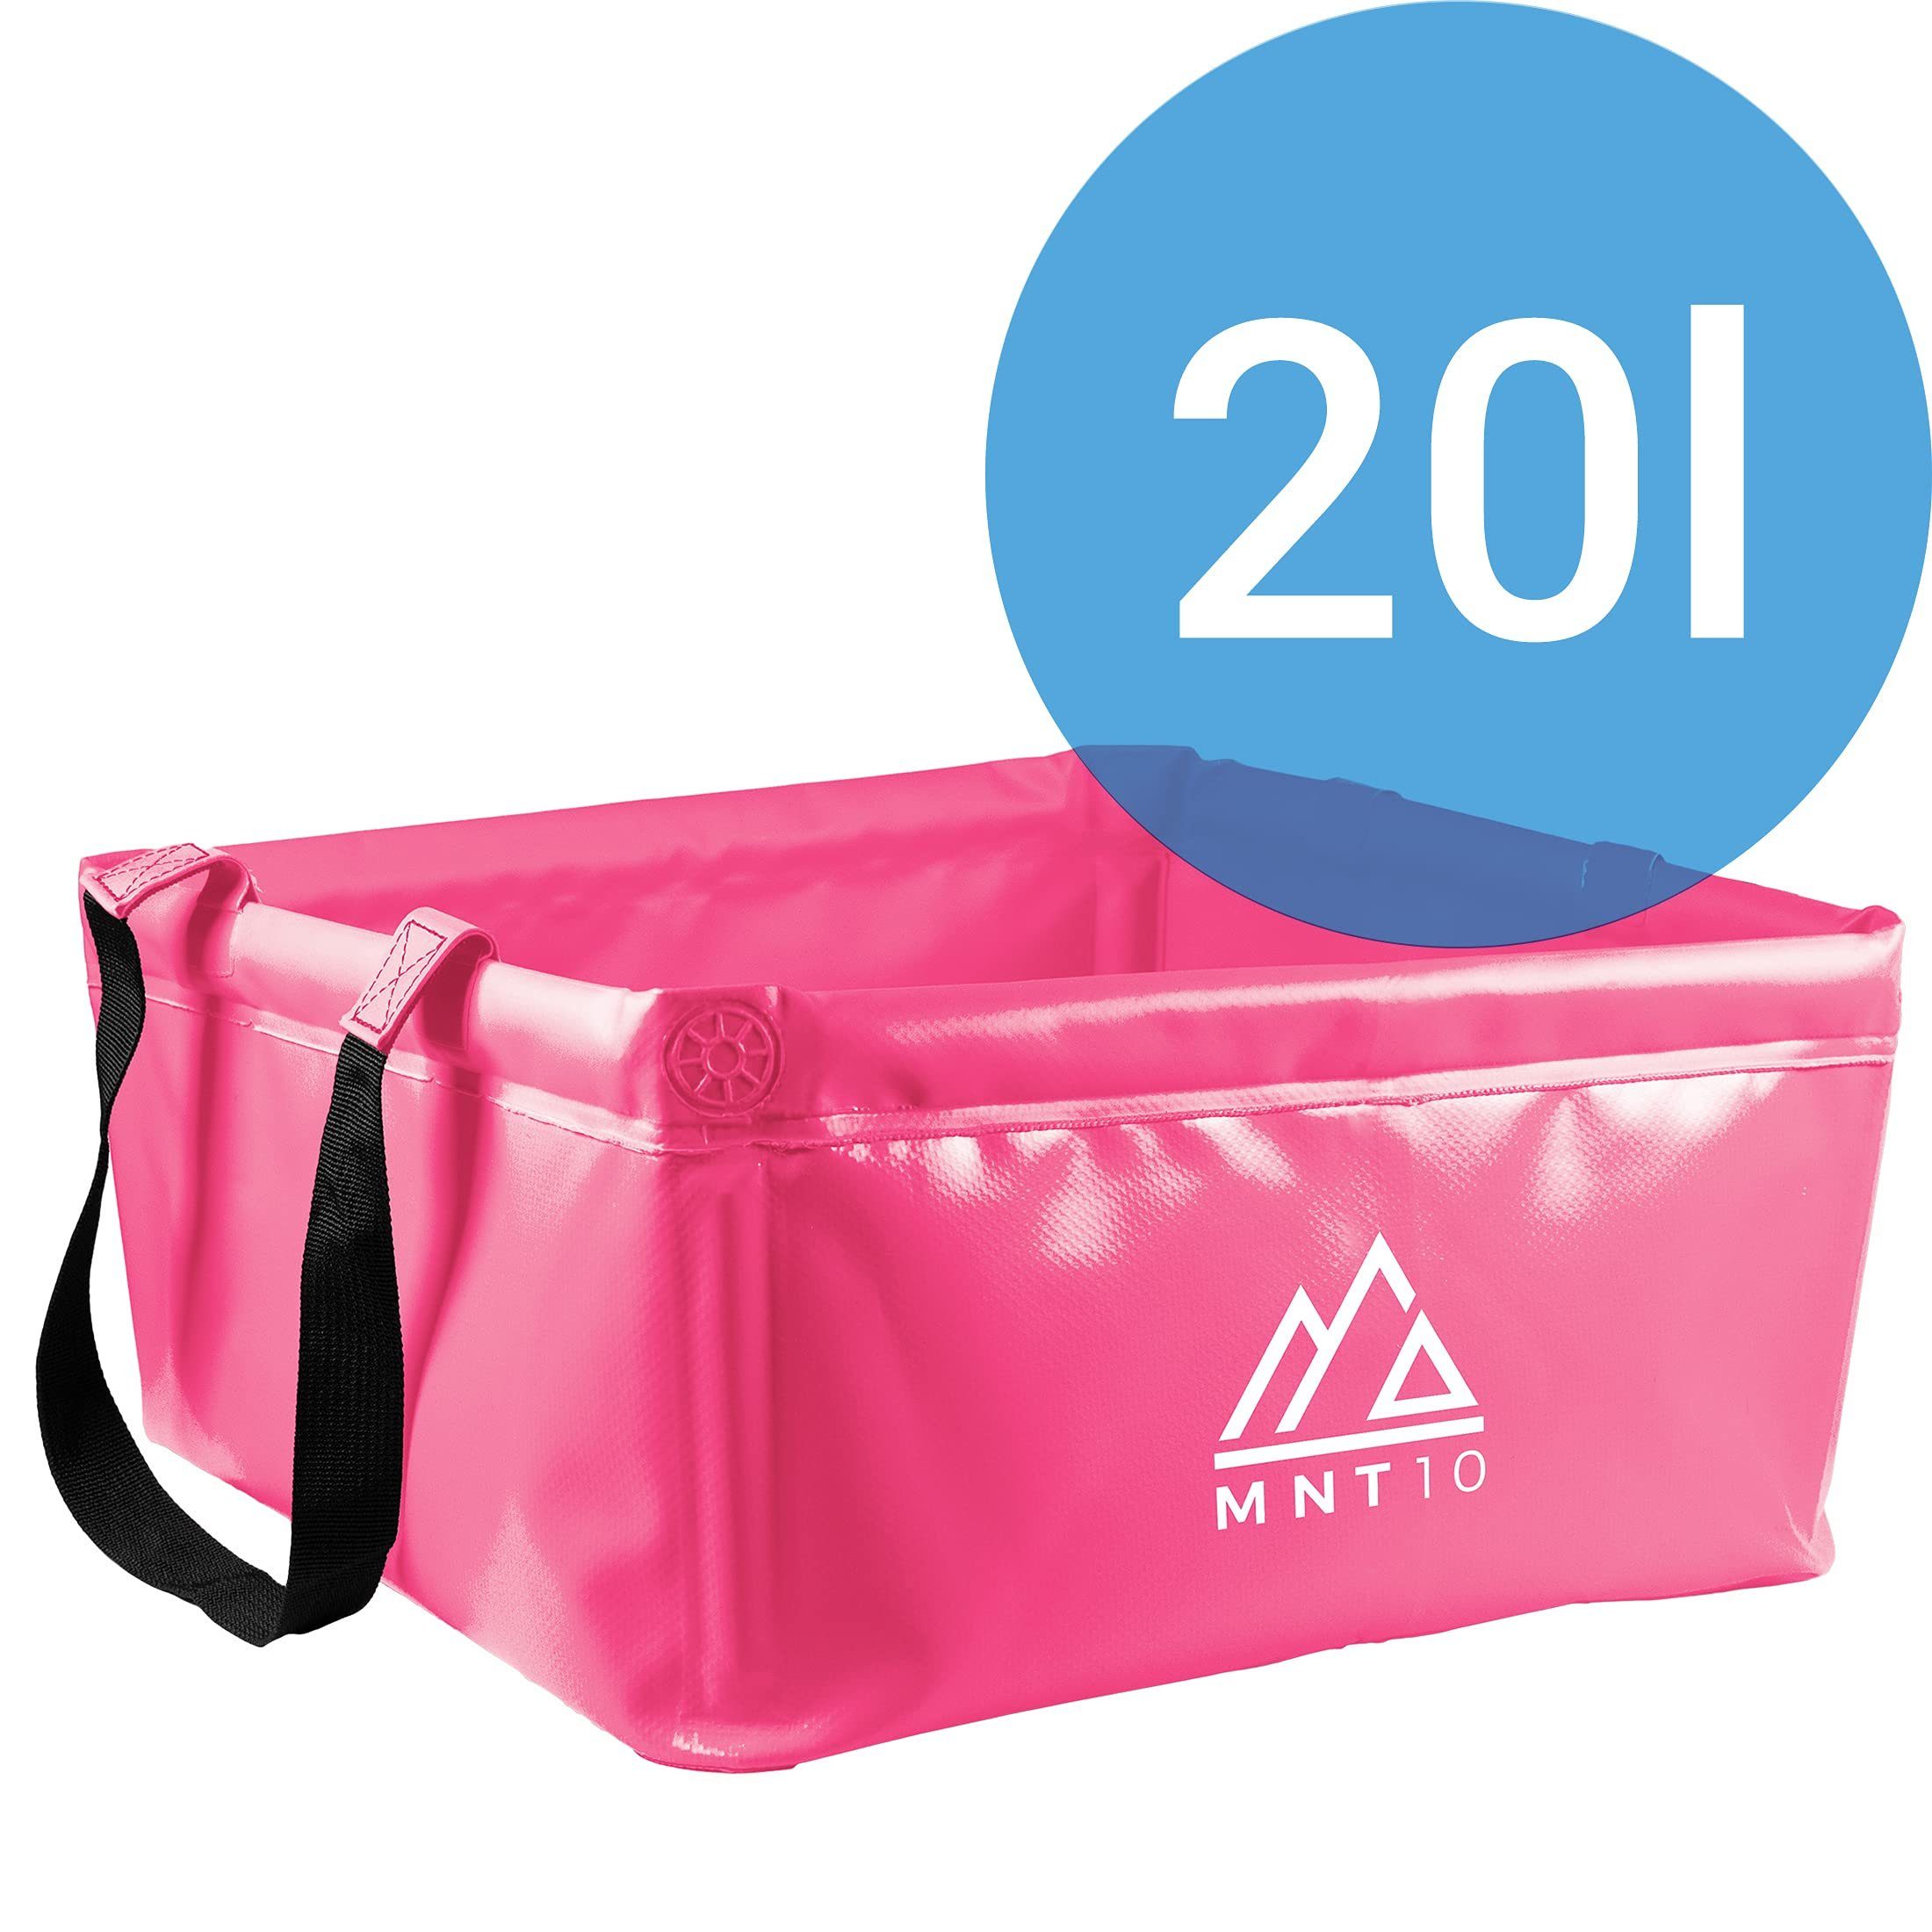 MNT10 Falteimer 15L & Outdoor Faltbare 20L Camping 20L Spülschüssel I Faltschüssel Pink I Robuste Camping-Waschschüssel, Als Waschschüssel Camping